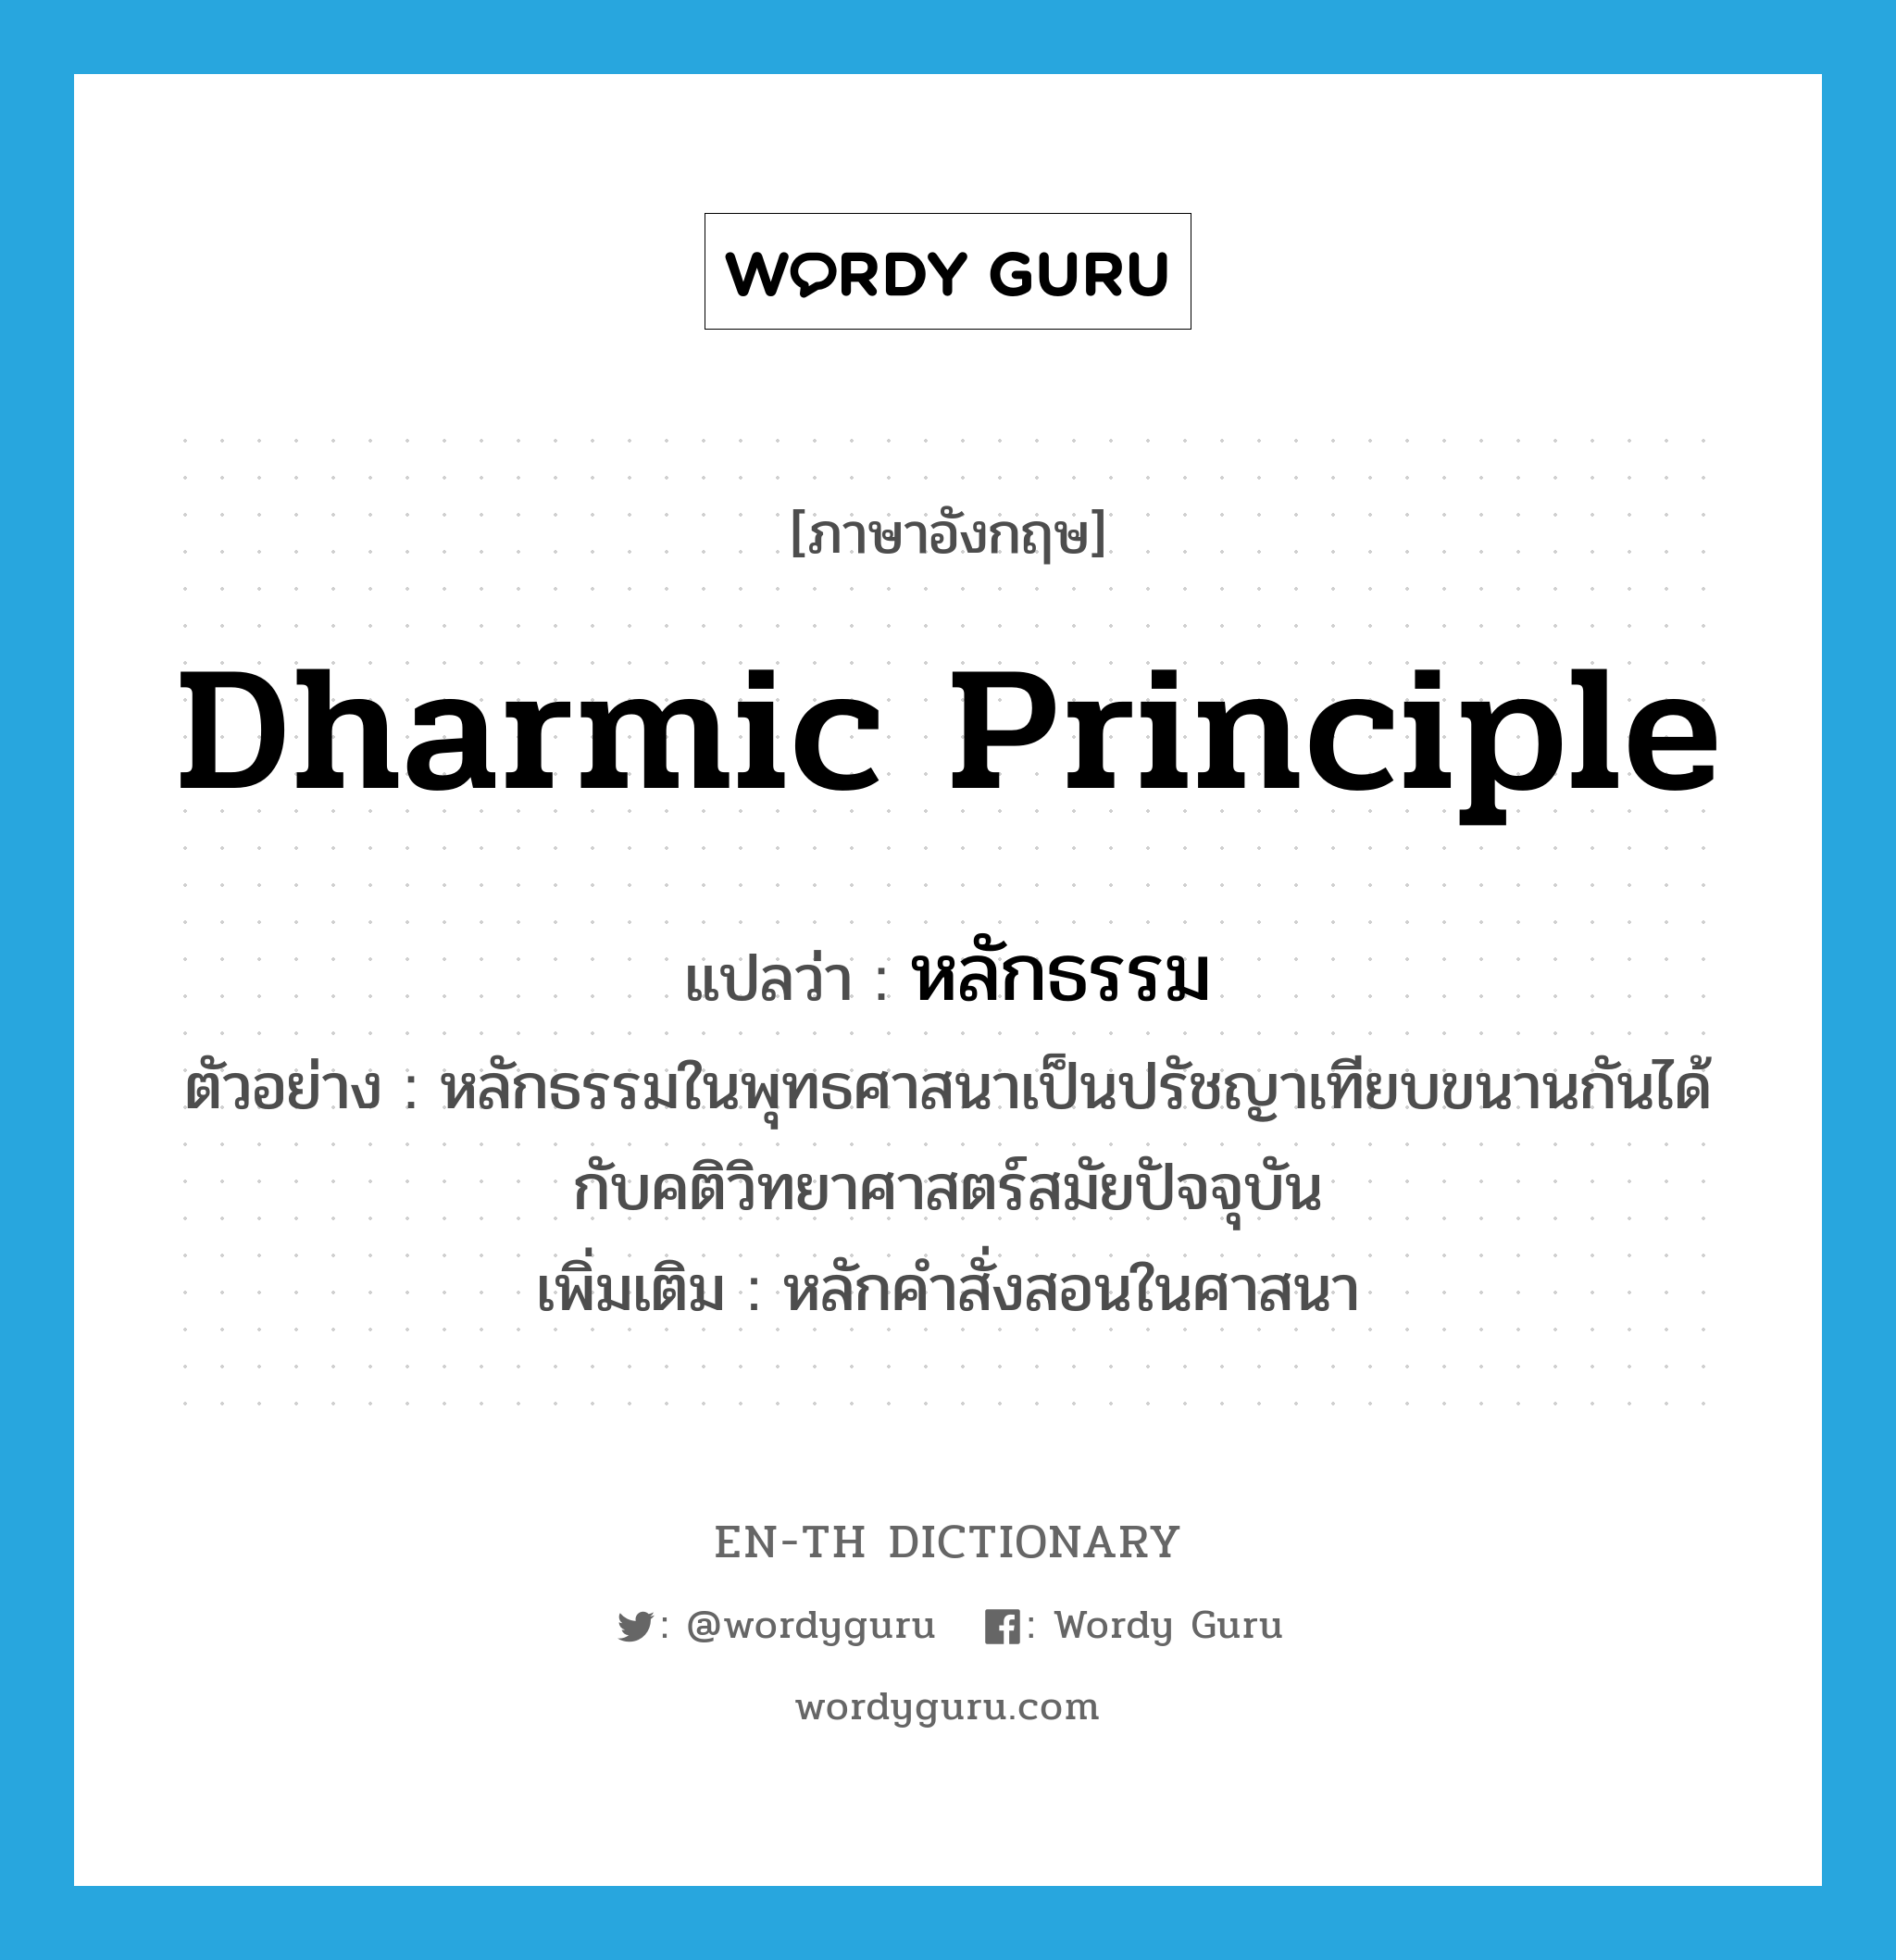 dharmic principle แปลว่า?, คำศัพท์ภาษาอังกฤษ dharmic principle แปลว่า หลักธรรม ประเภท N ตัวอย่าง หลักธรรมในพุทธศาสนาเป็นปรัชญาเทียบขนานกันได้กับคติวิทยาศาสตร์สมัยปัจจุบัน เพิ่มเติม หลักคำสั่งสอนในศาสนา หมวด N